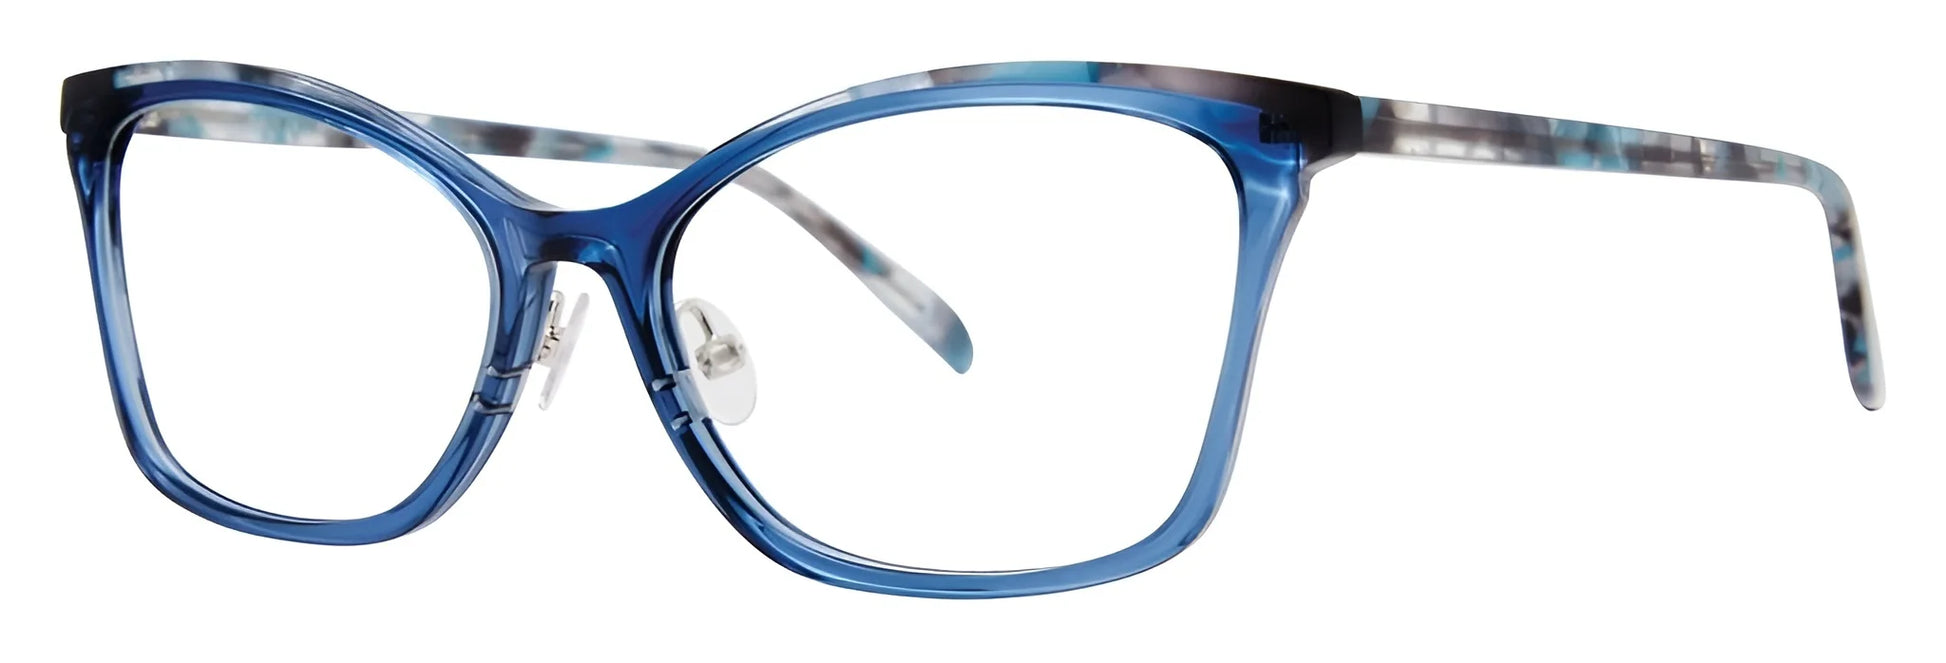 OGI LADY SLIPPER Eyeglasses Blue Robin Tortoise